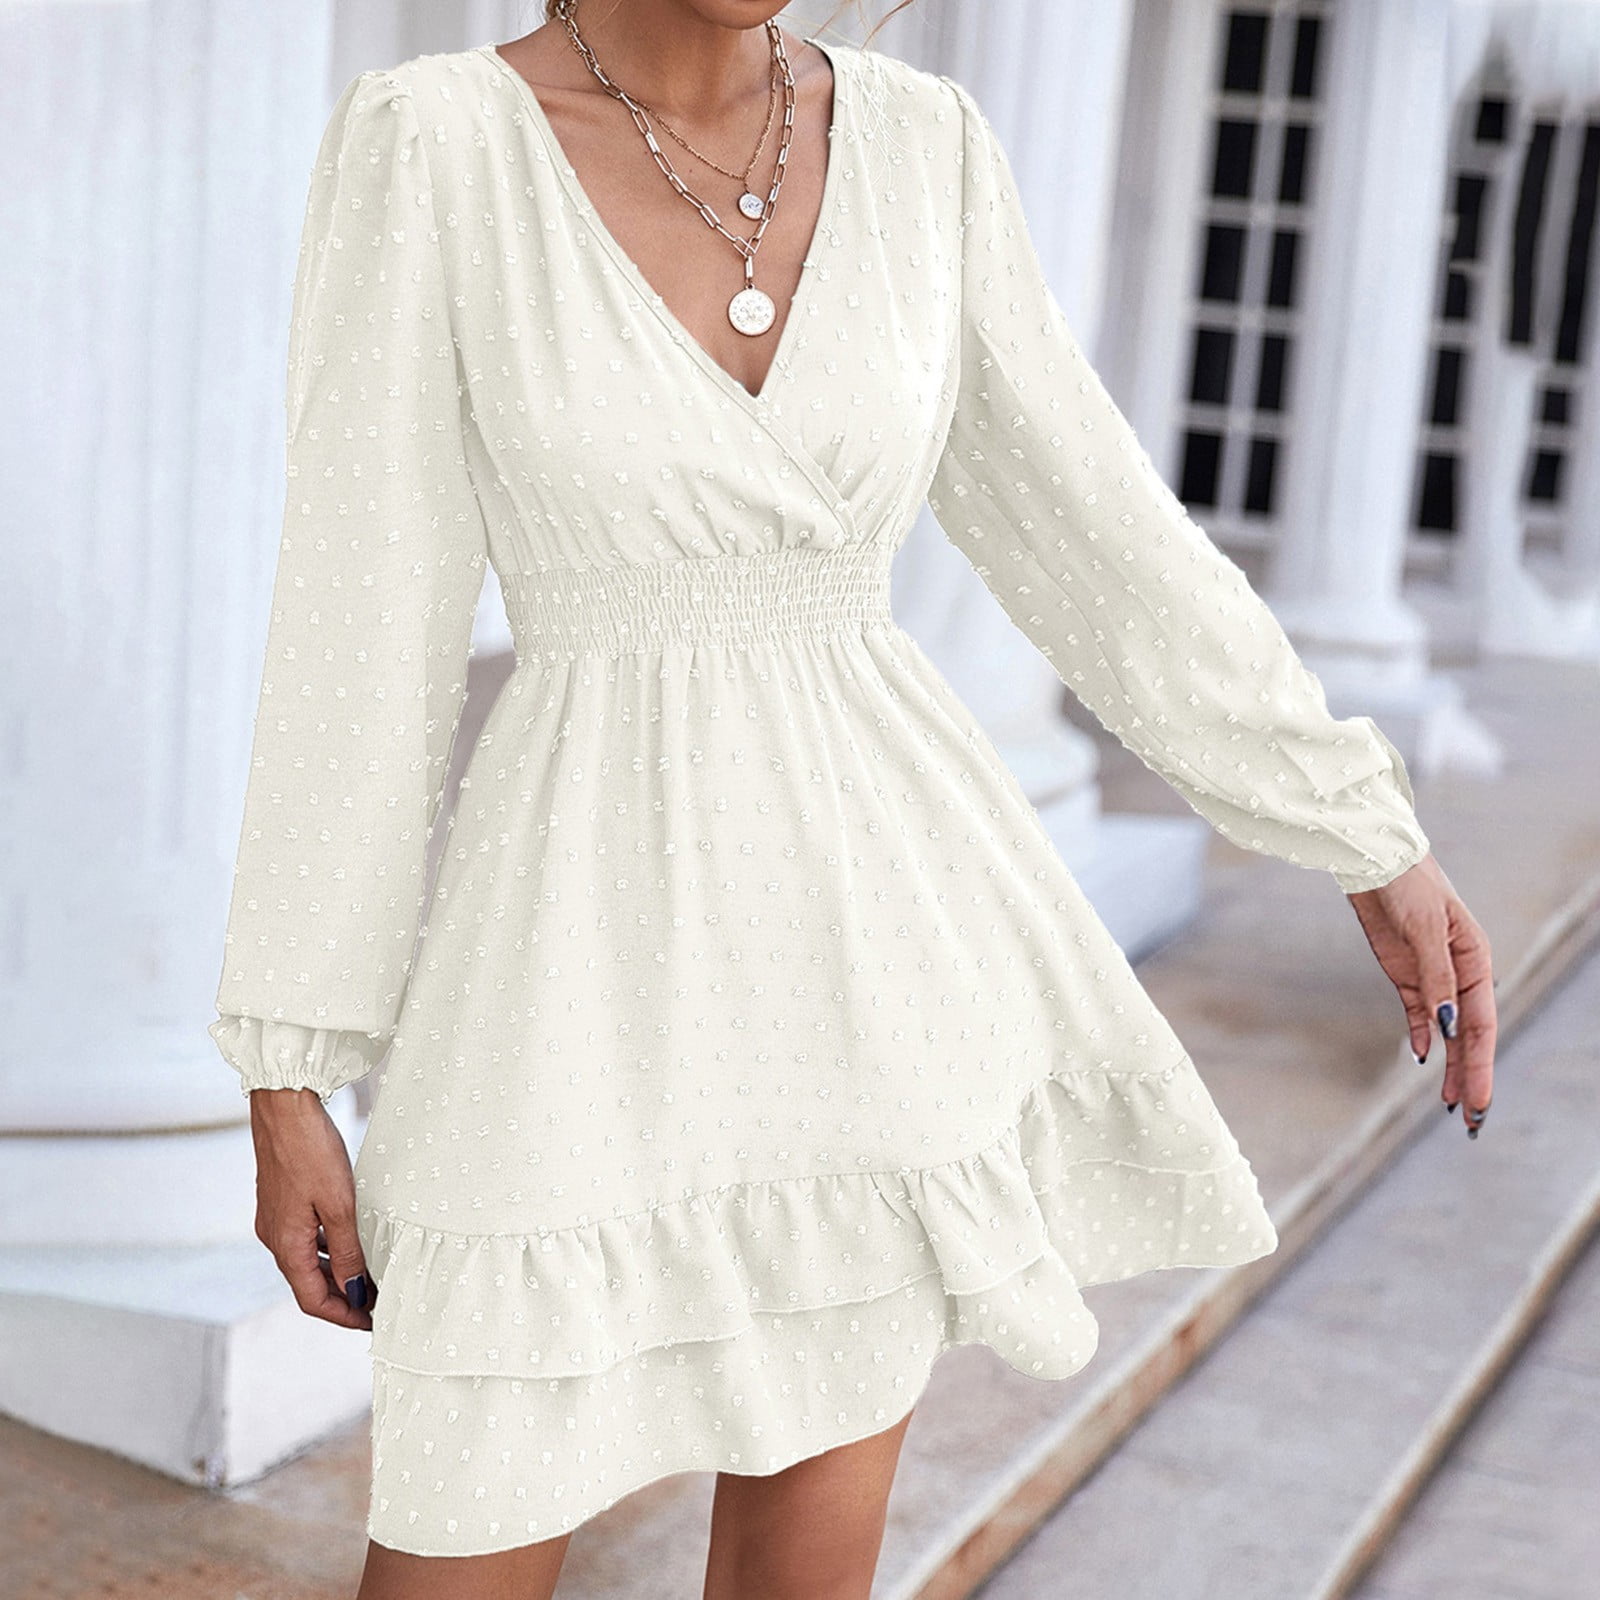 white short sleeve dress